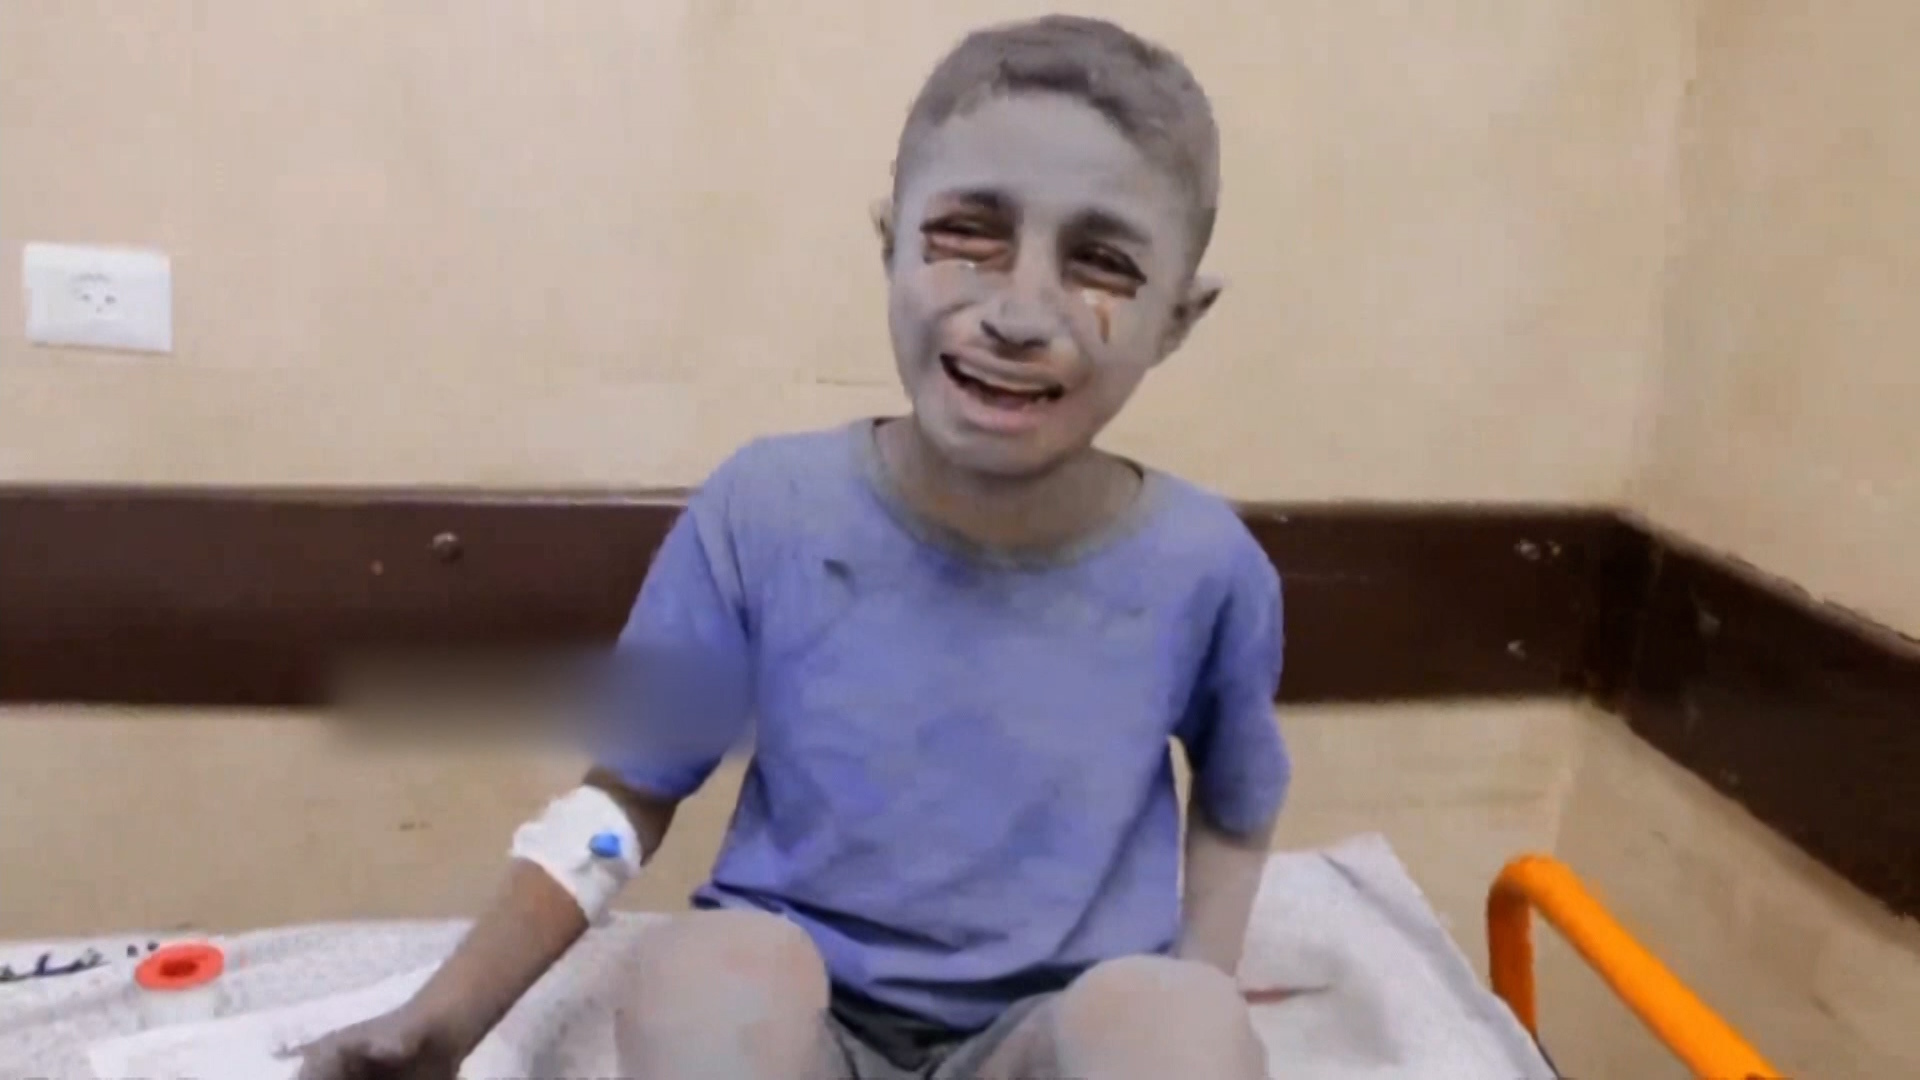 قصف إسرائيل يبيد عائلات بأكملها في غزة | البرامج – البوكس نيوز